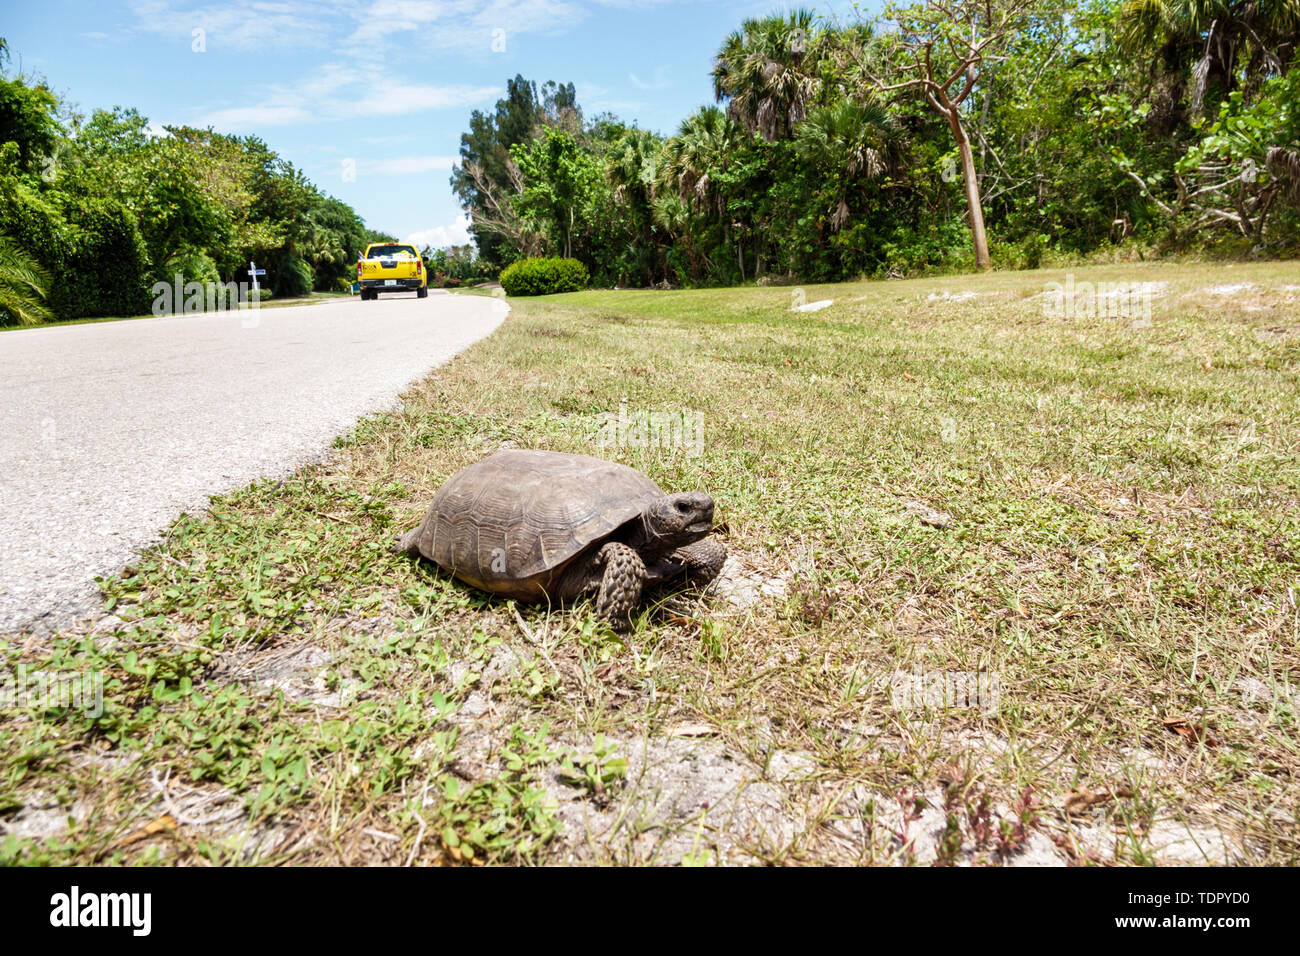 Sanibel Island Florida,tortues Gopher Gopherus polyphemus,chaussée,véhicule,faune,danger pour la sécurité,intrusion dans l'habitat,FL190507092 Banque D'Images